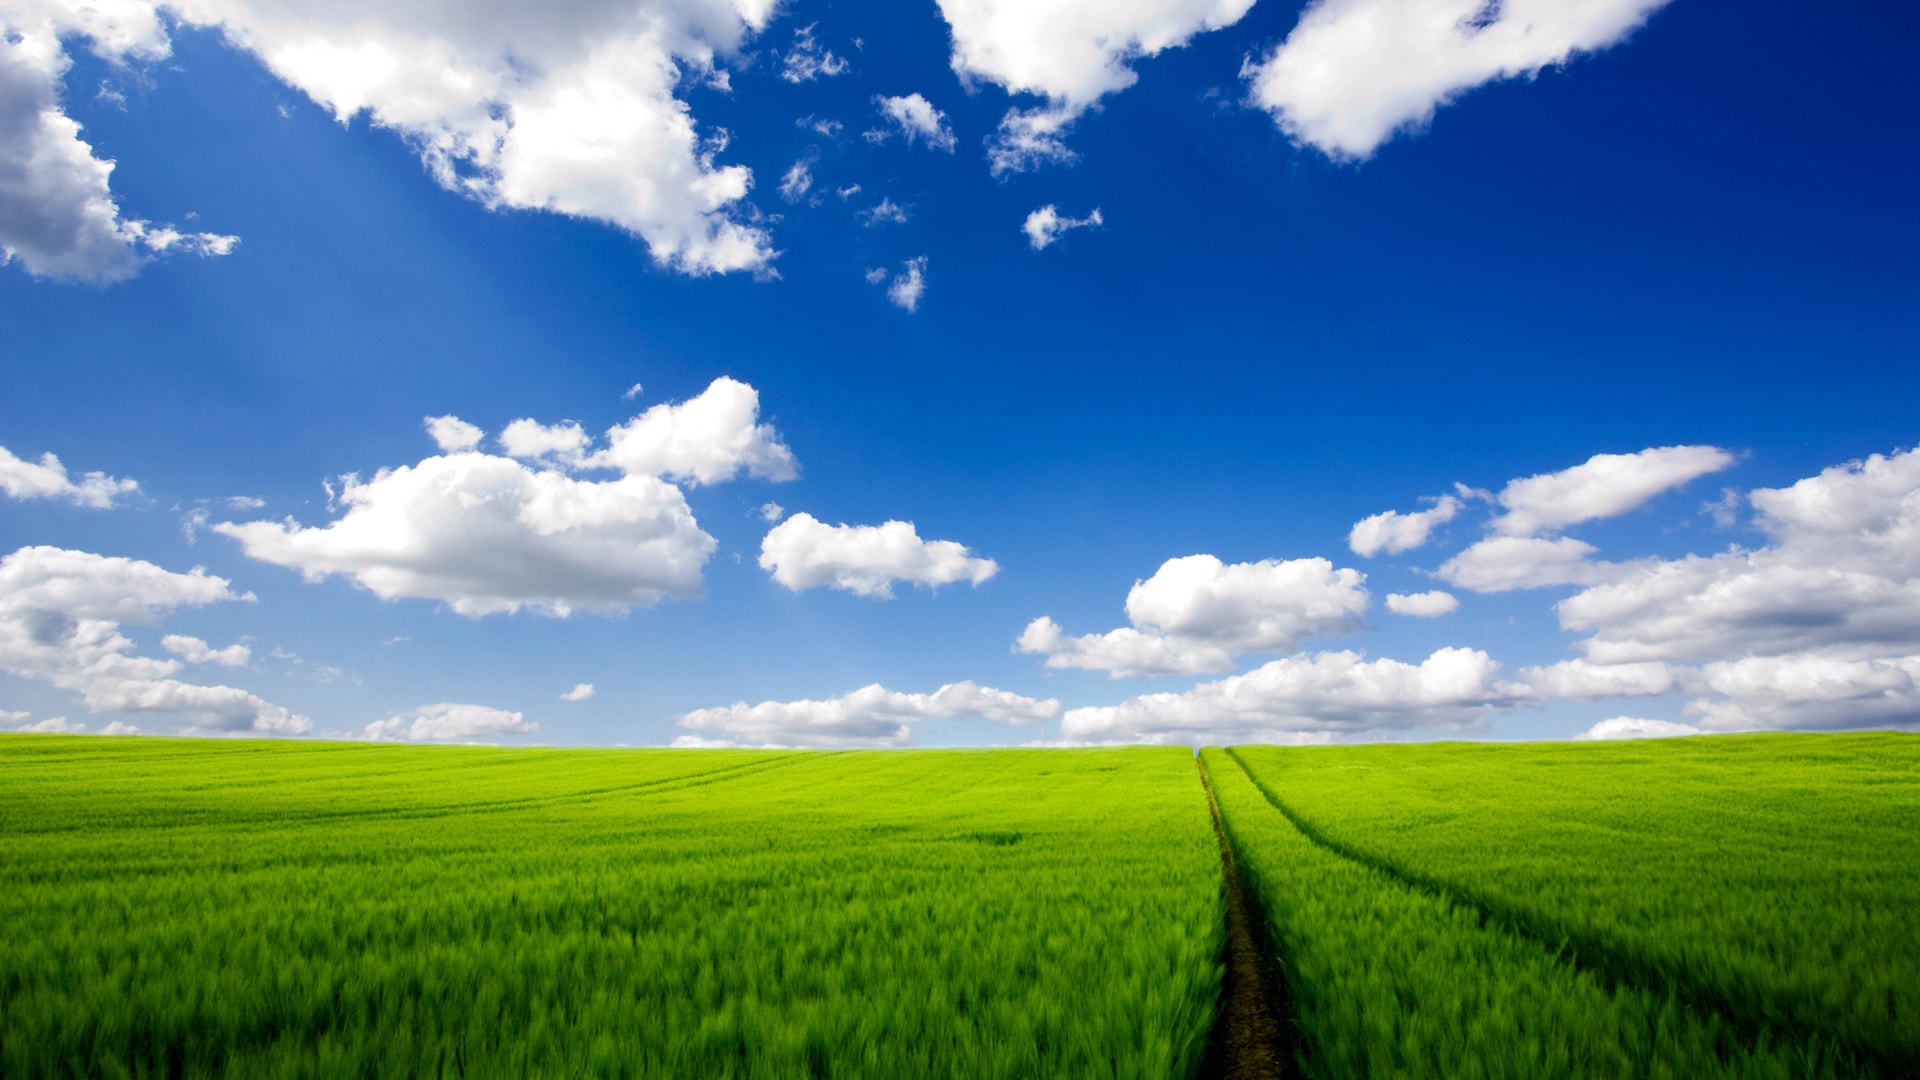 蔚蓝天空下穿越绿色田野感受自然风光